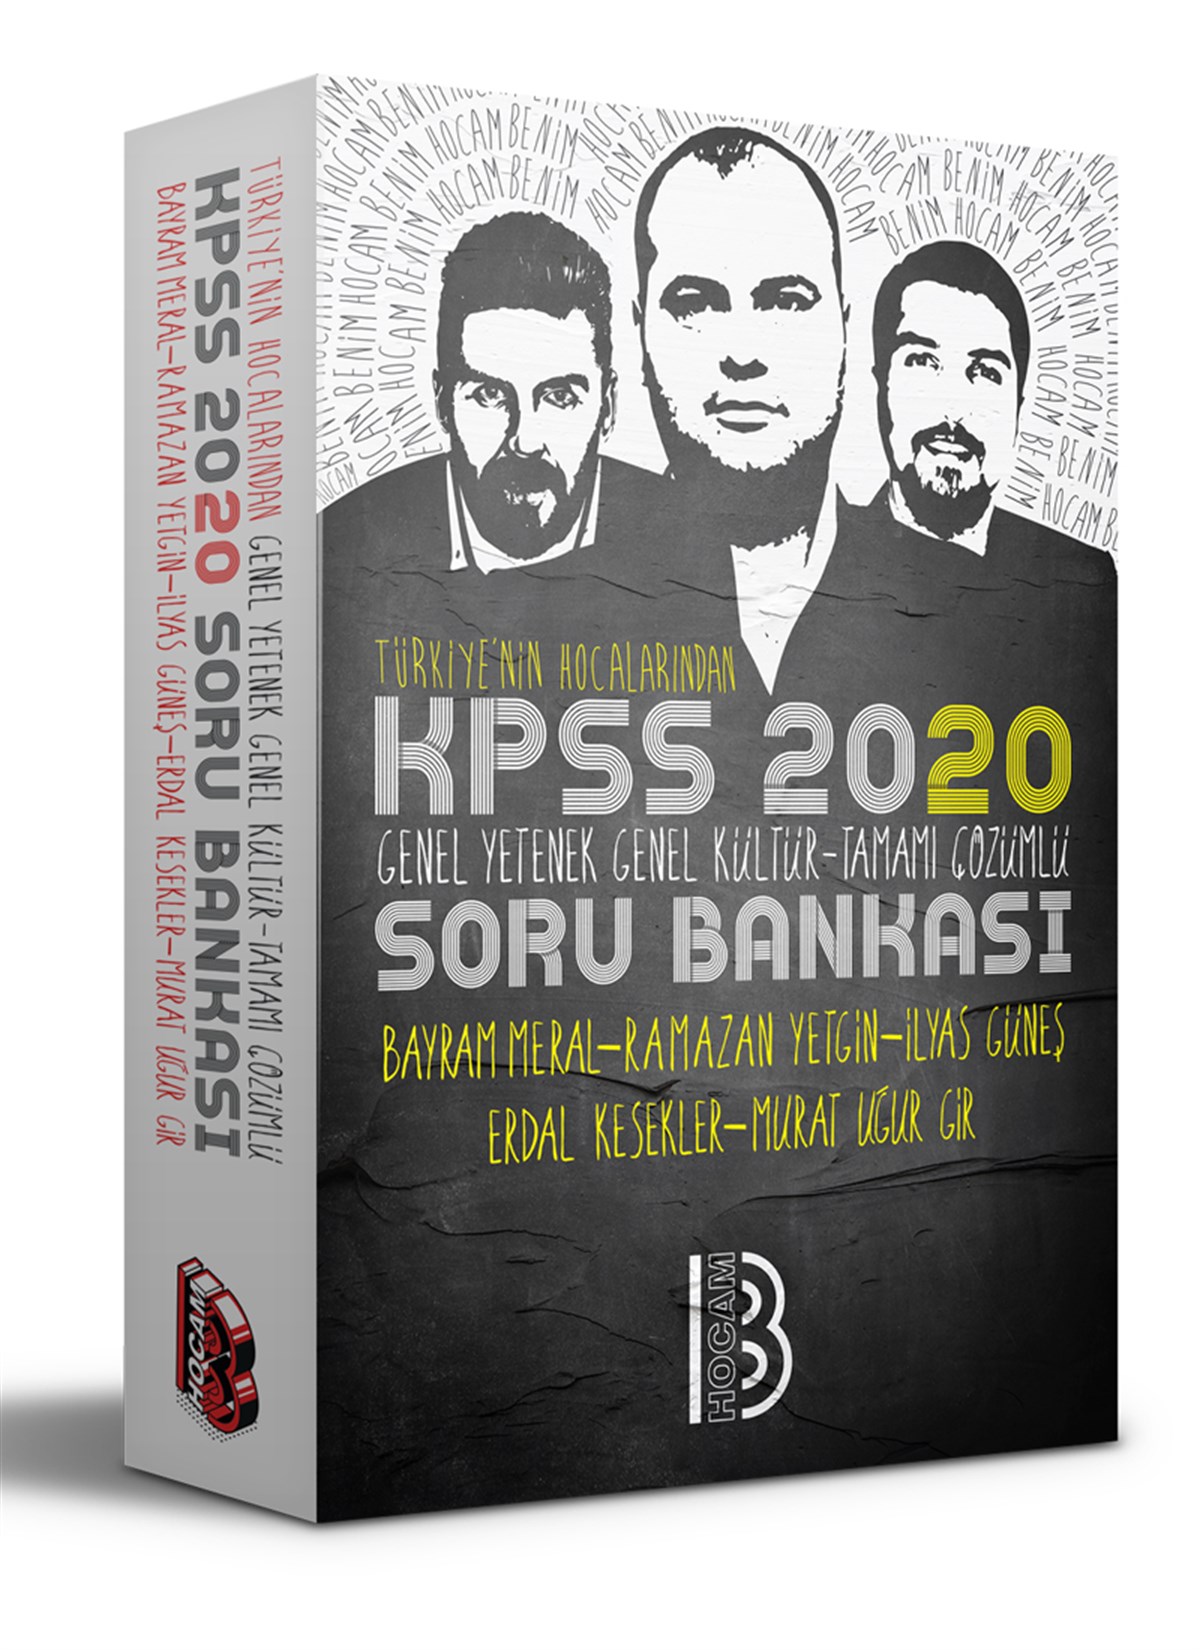 2020 KPSS G-Y - G-K Tamamı Çözümlü Soru Bankası Benim Hocam Yayınları